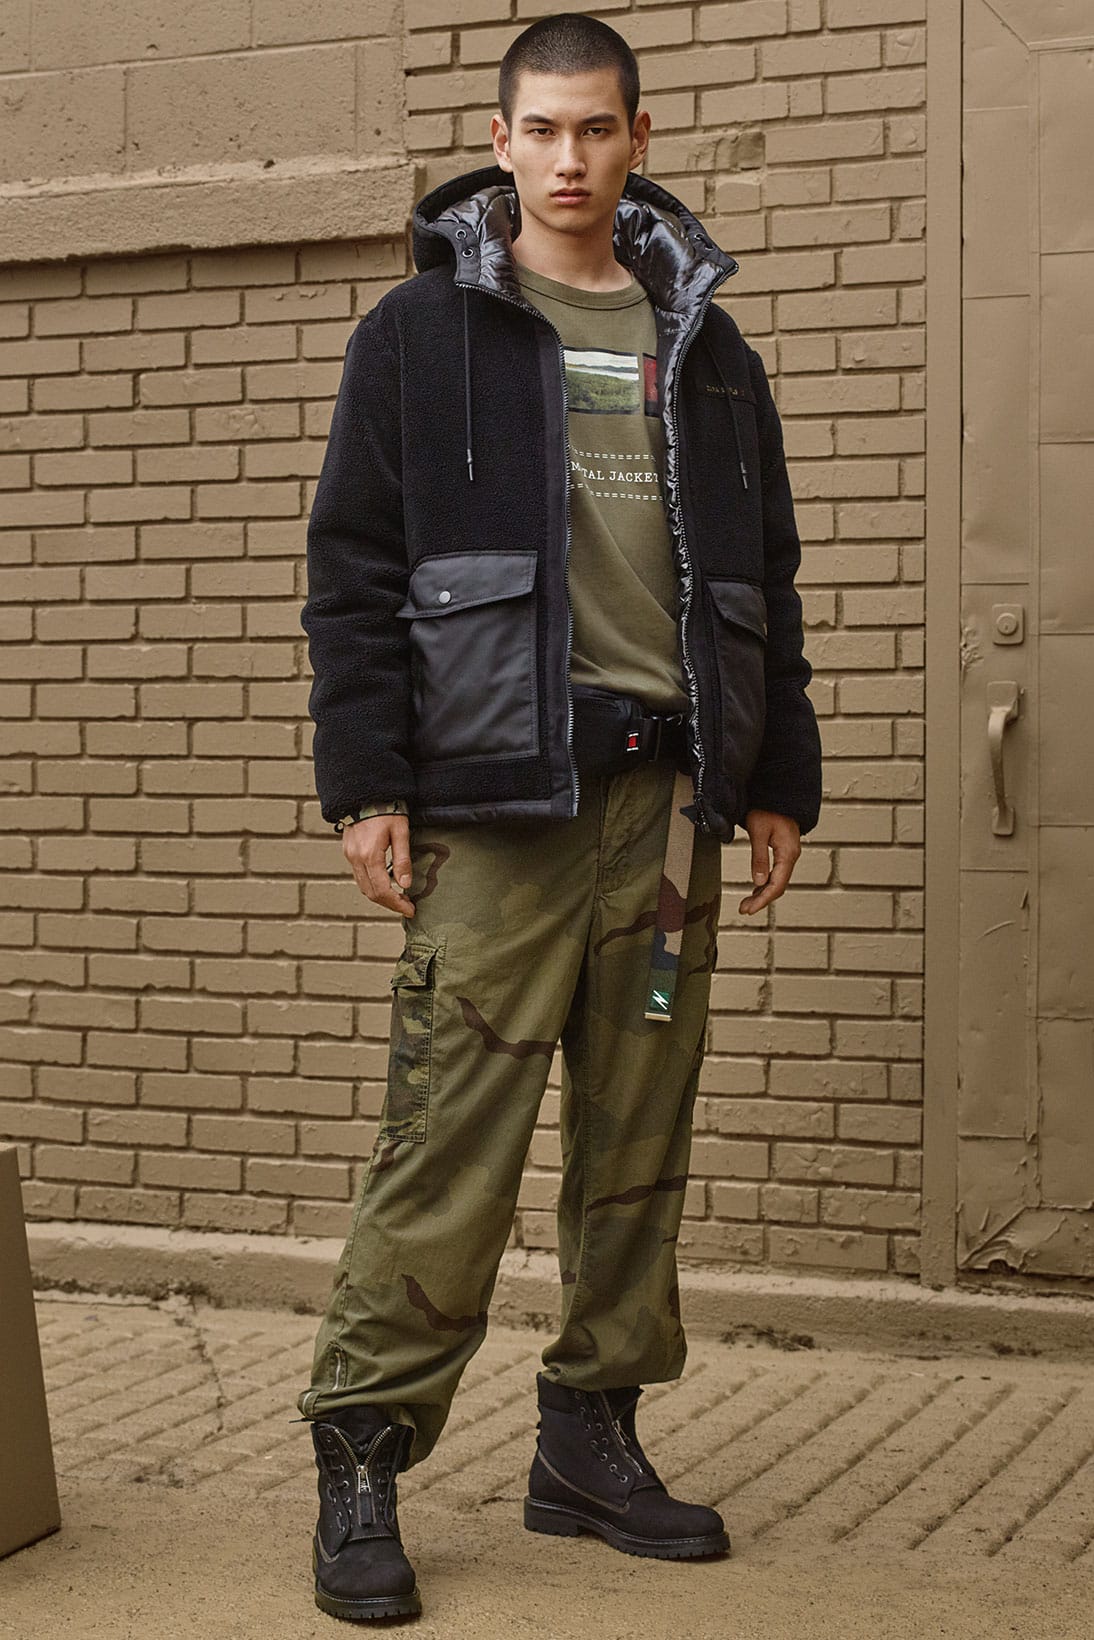 Zara Man camouflage cargo pants size 32w 32L. No stains/tears. | eBay